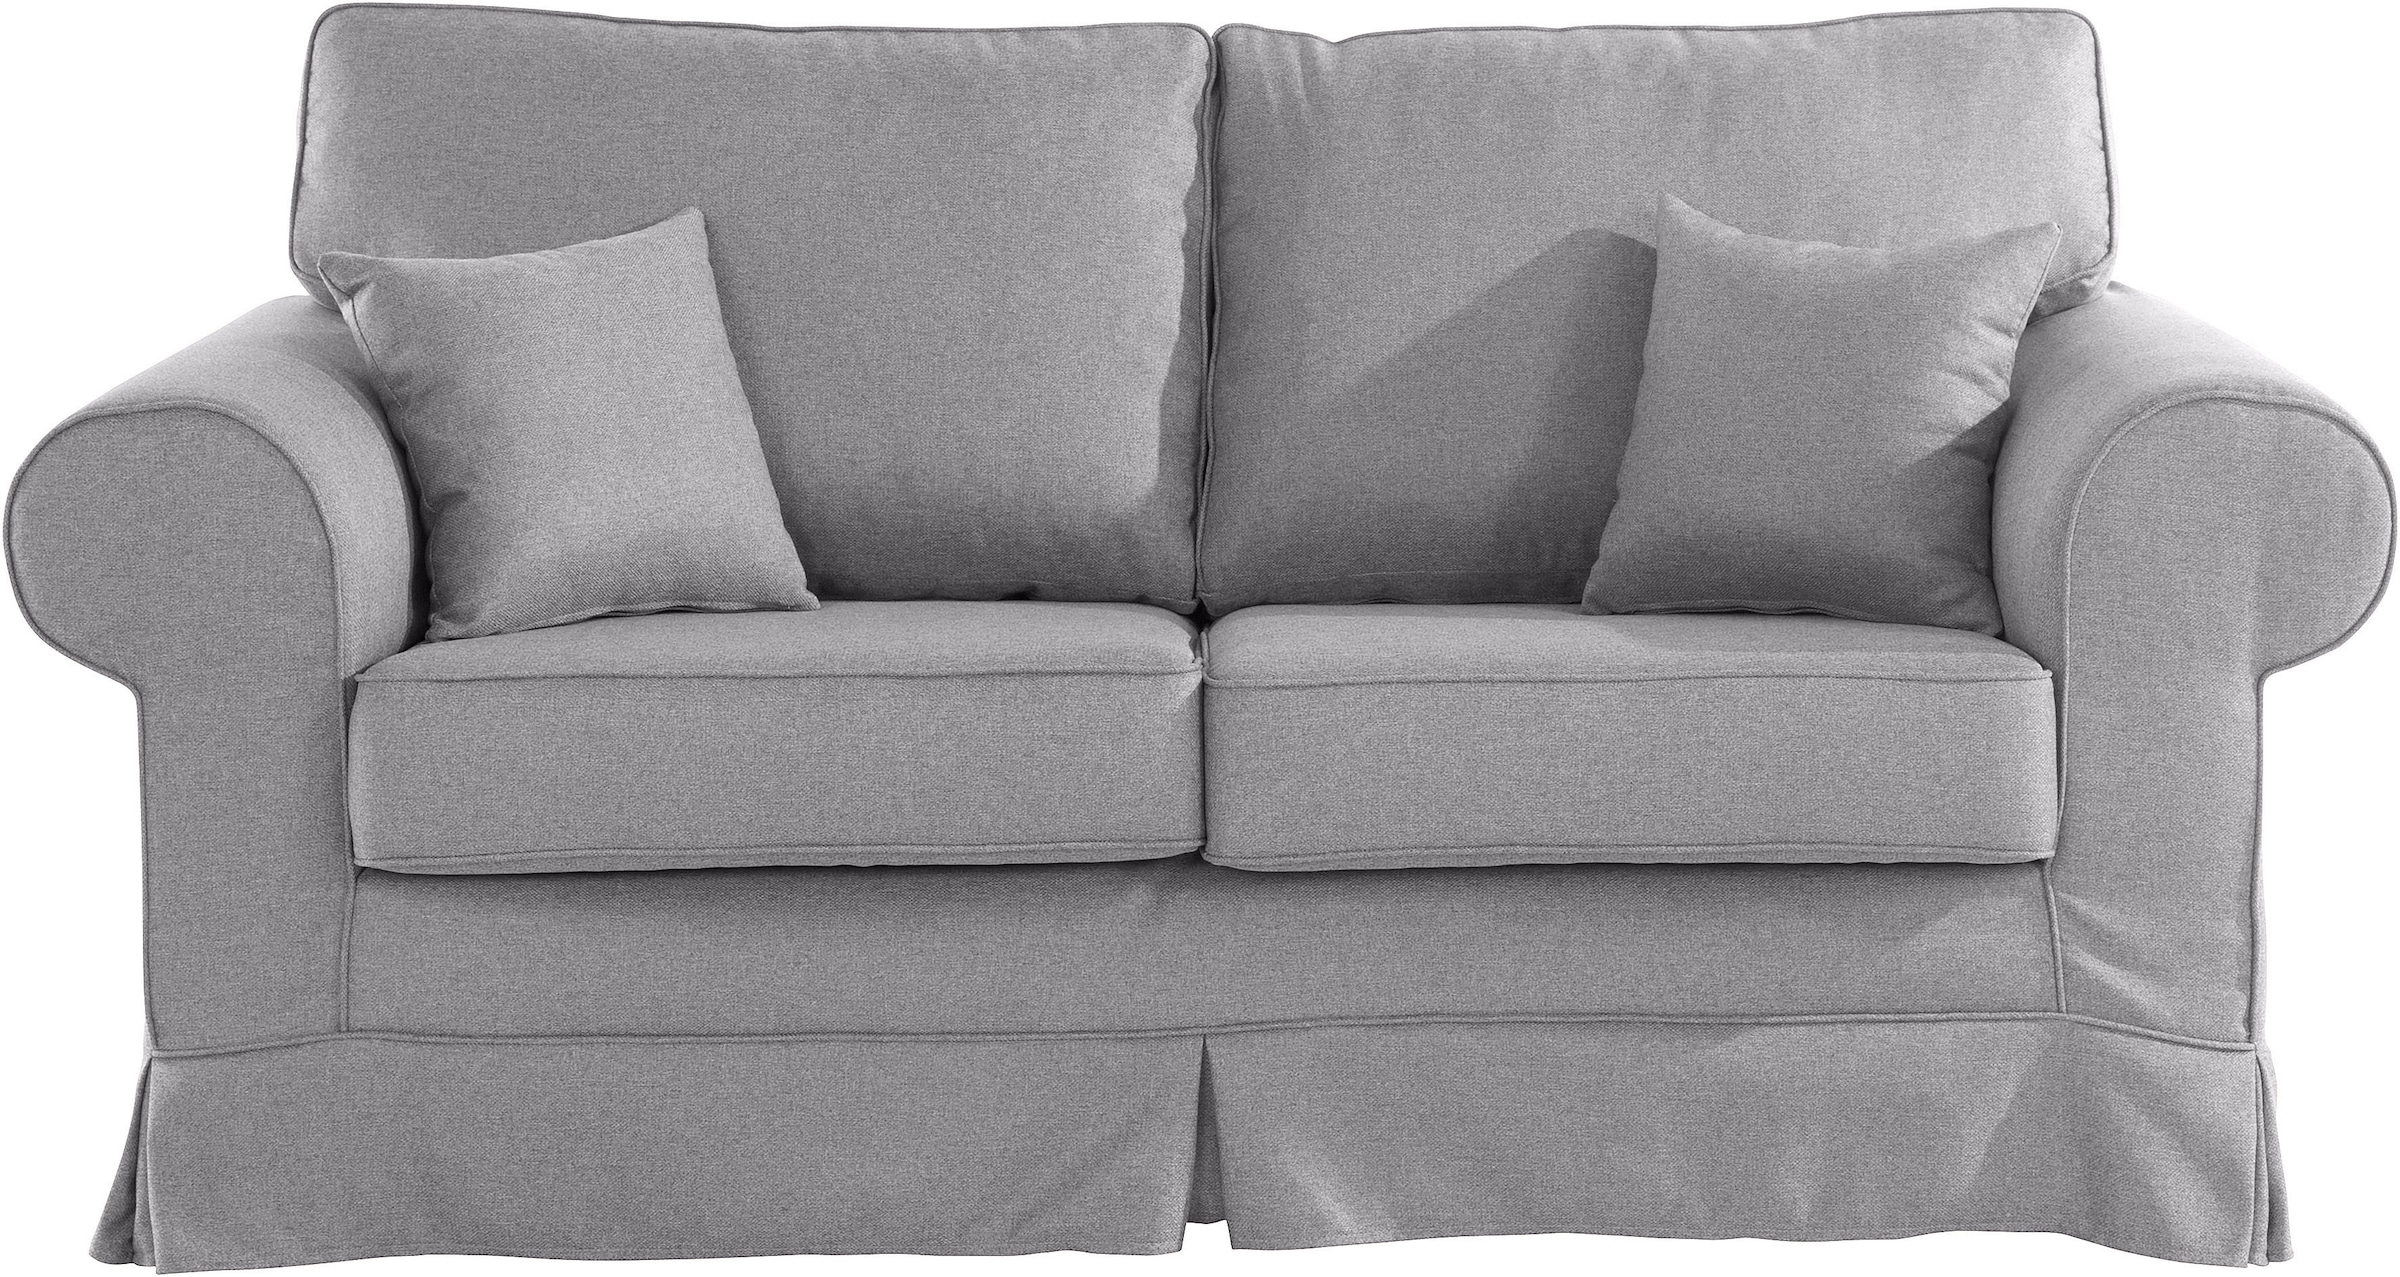 Stretch kaufen Trendige Couchbezug online